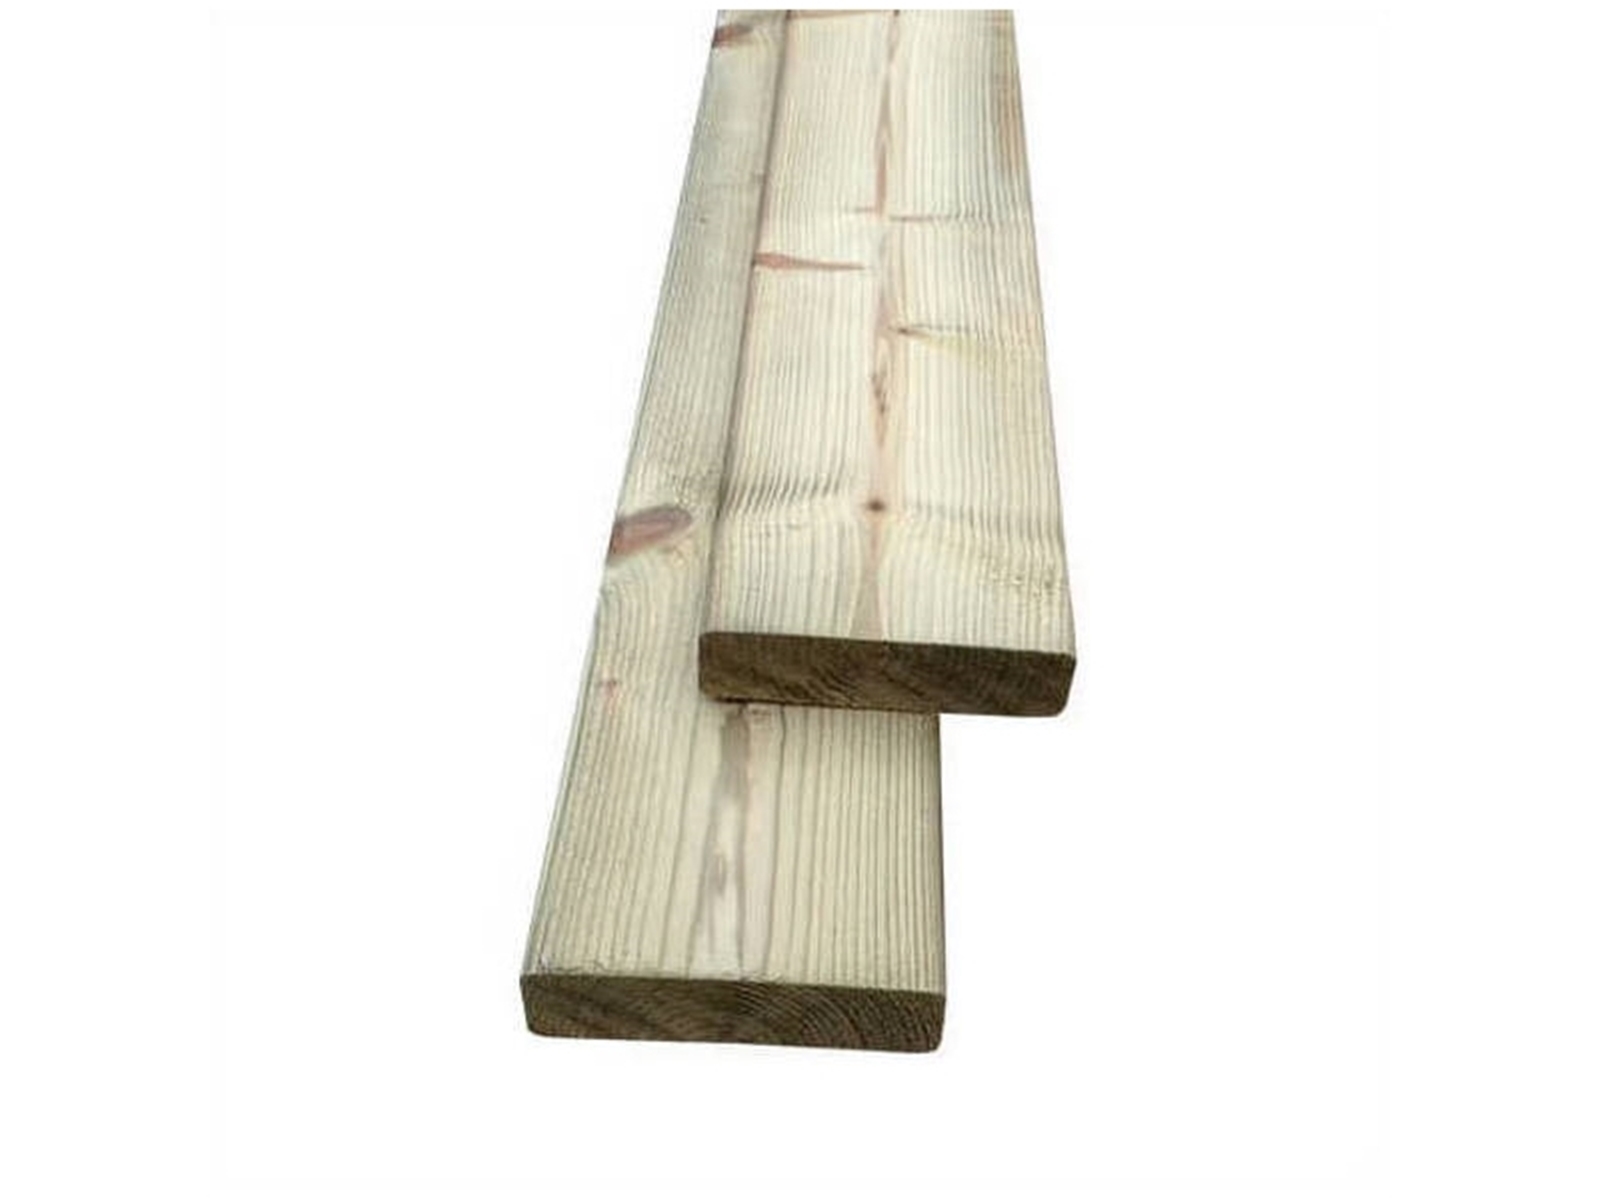 Sinewi Knikken Moedig NE-vuren houten plank (klamp) ±28x120mm, geschaafd, VDV geïmpregneerd,  5100mm